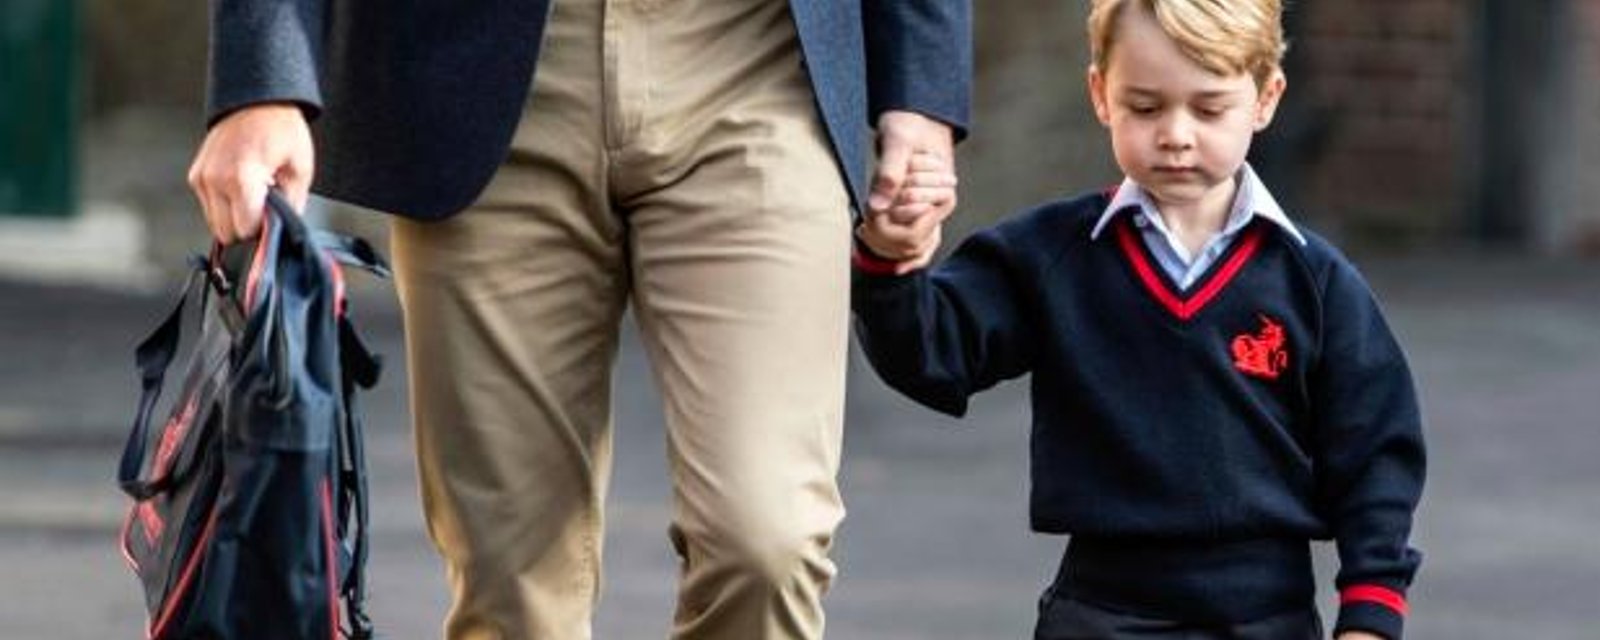 Une nouvelle photo du Prince George qui vient d'avoir 5 ans fera assurément fondre votre coeur